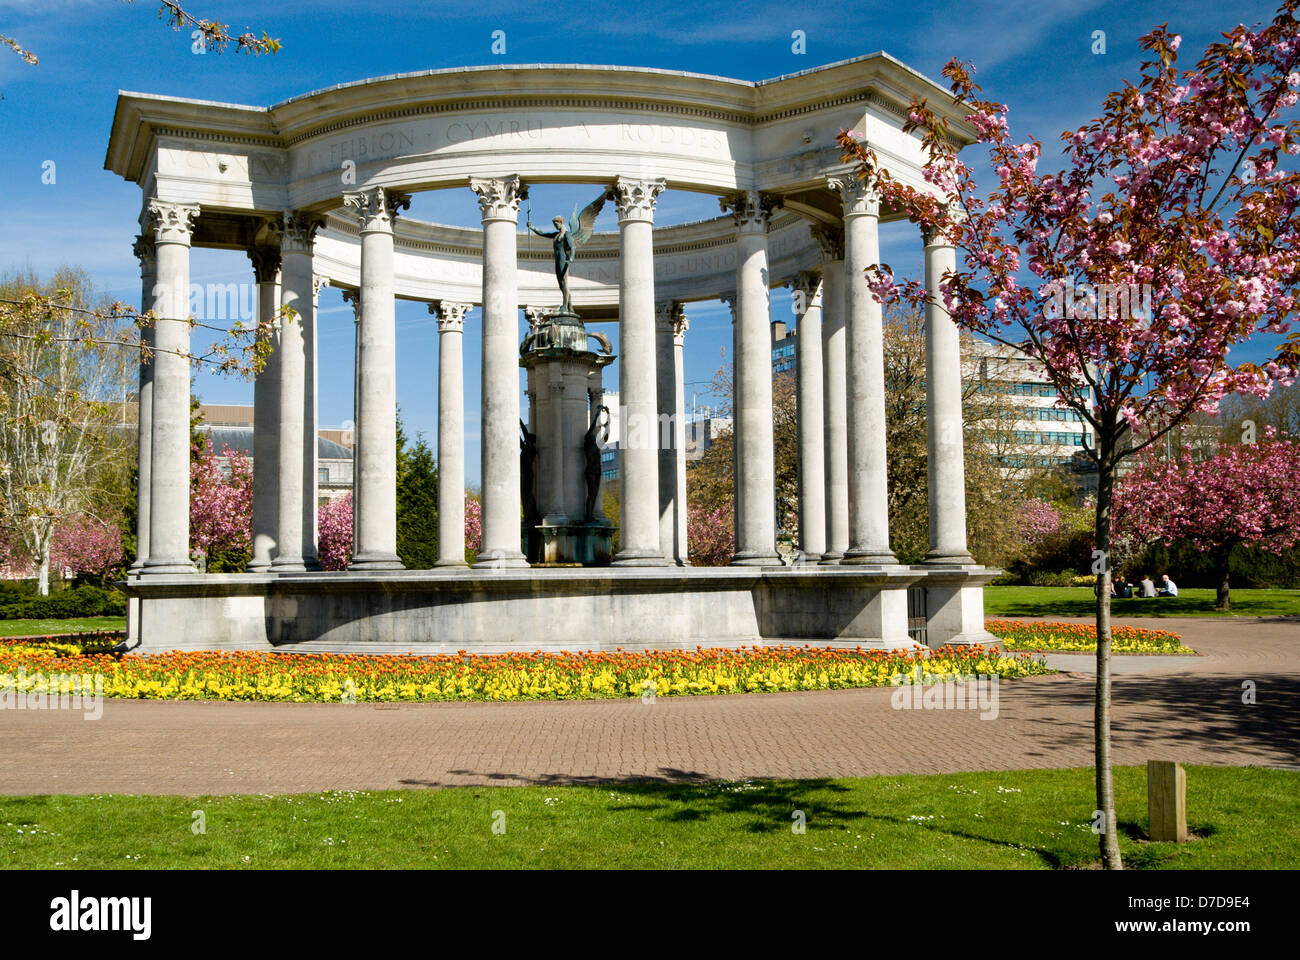 Monument commémoratif de guerre et tulipes Alexandra Gardens, Cathays Park, Cardiff, Pays de Galles. Banque D'Images